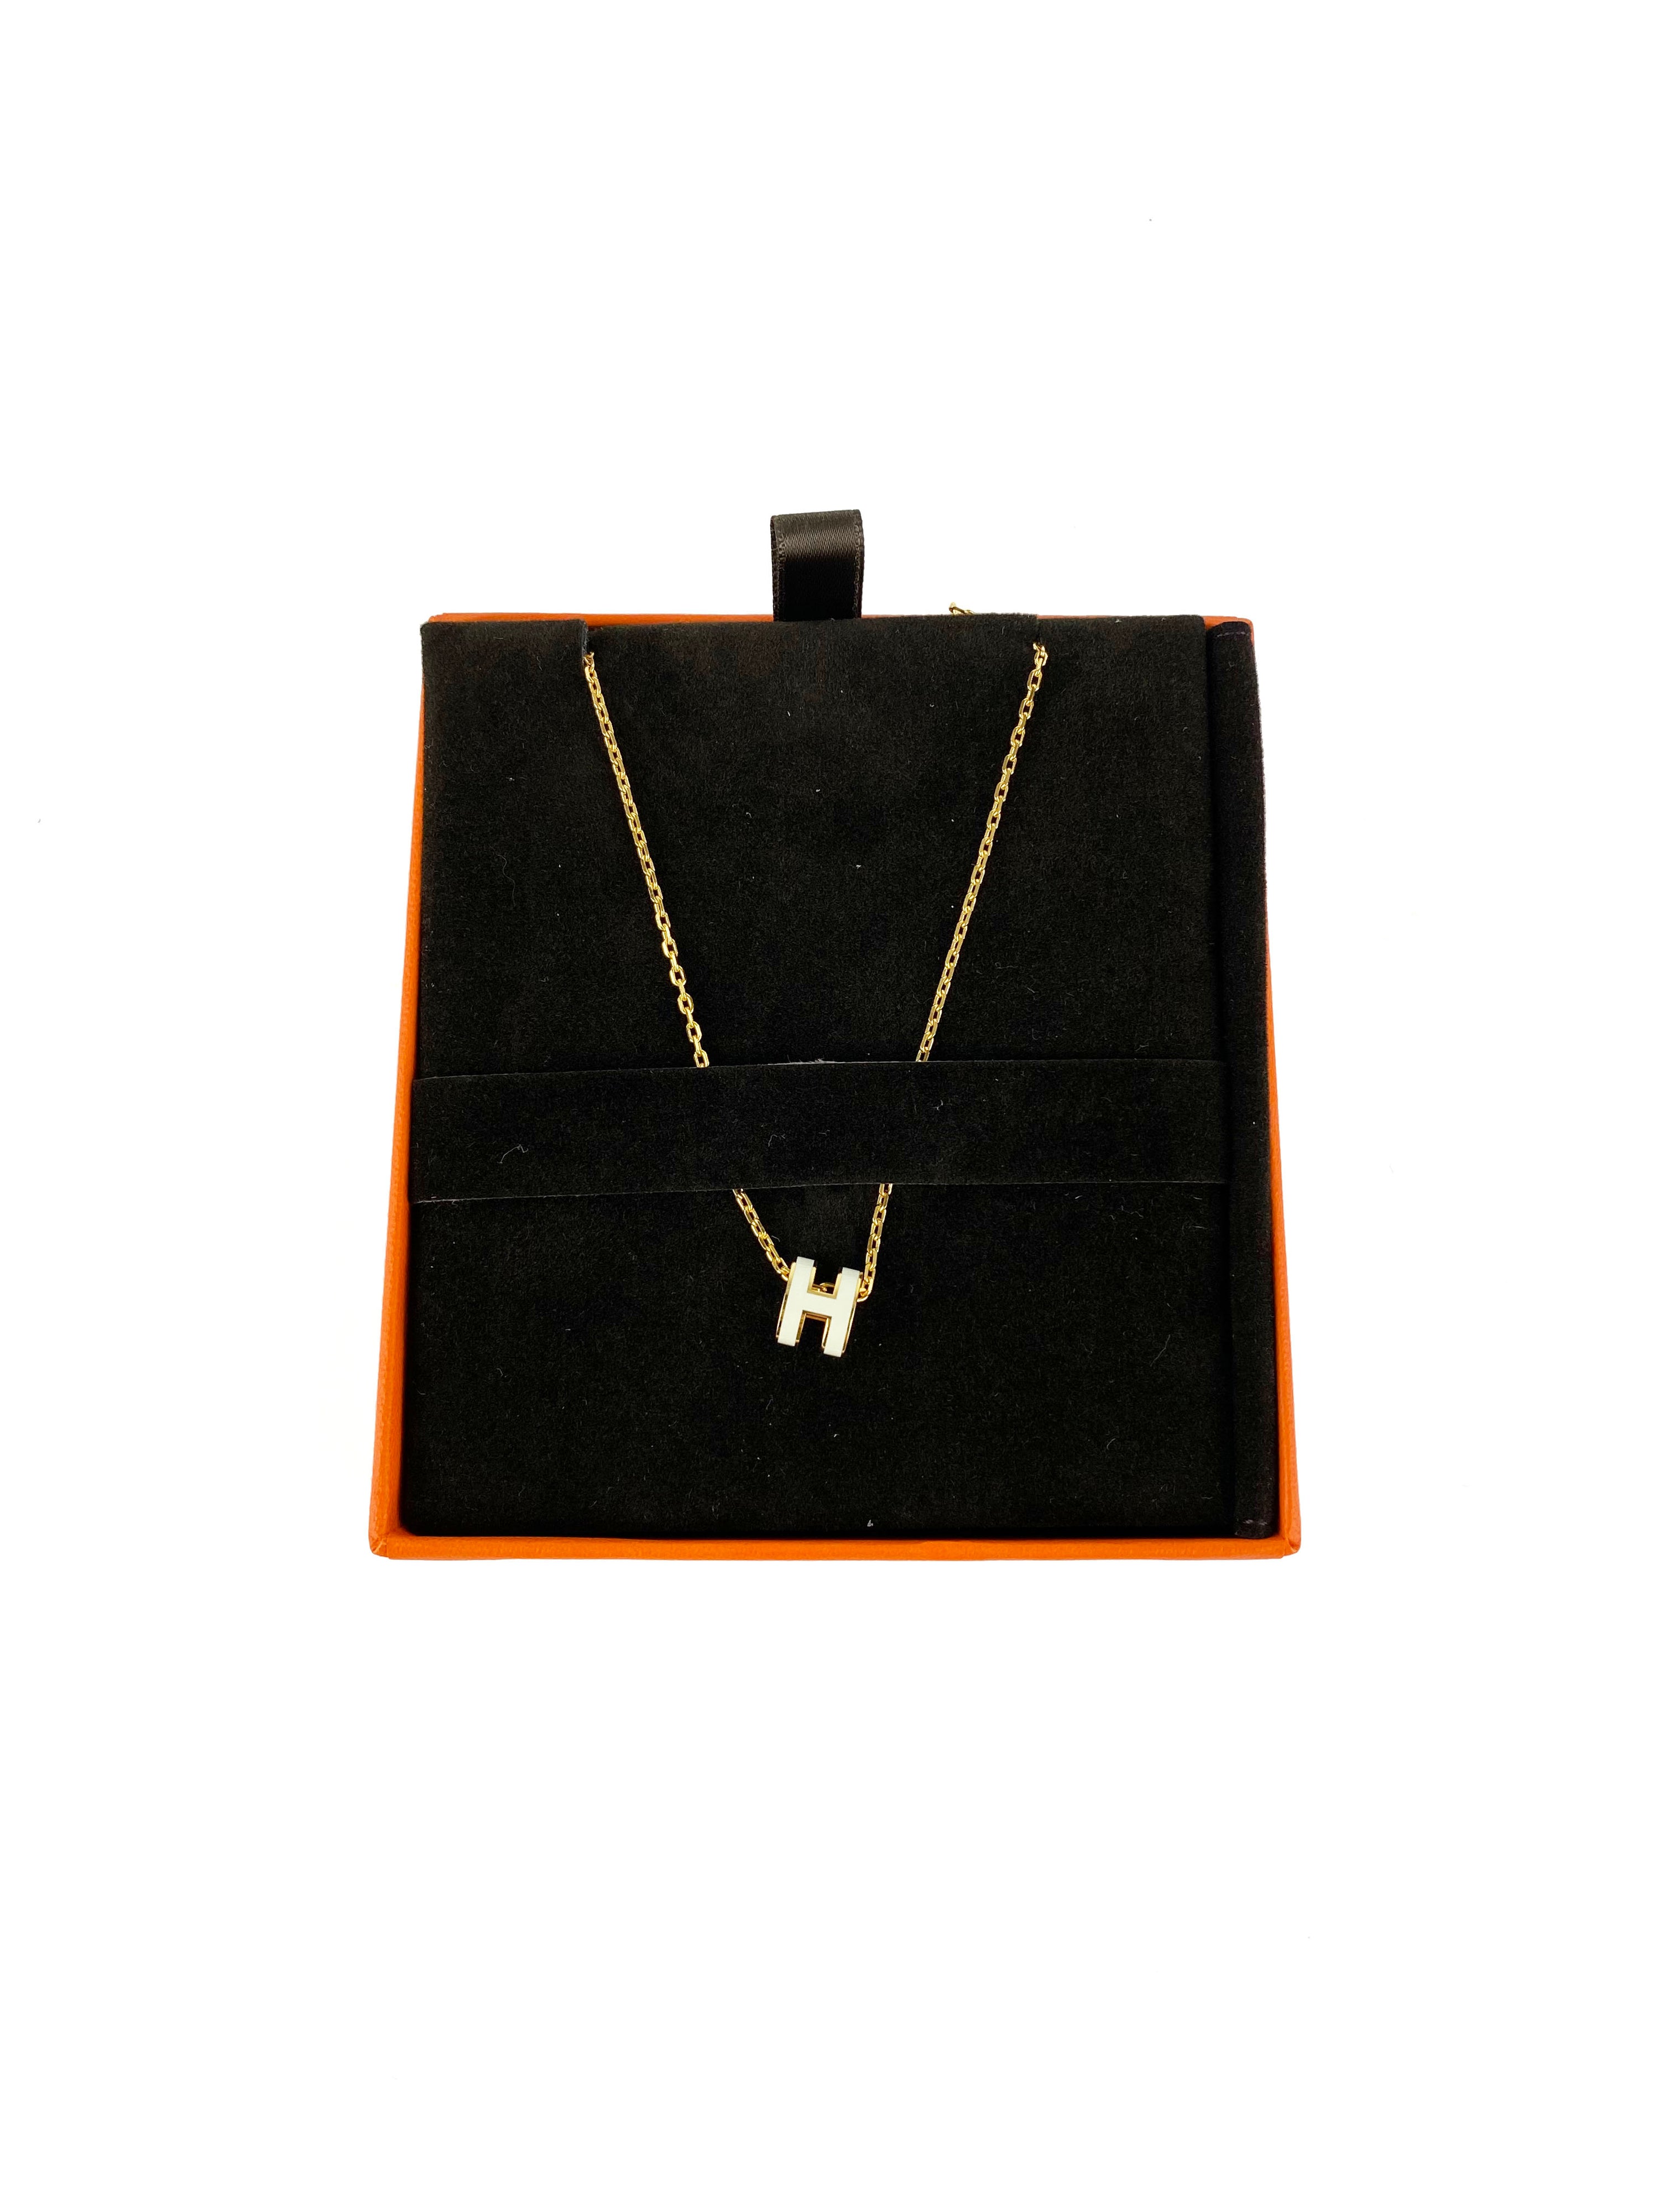 Hermes Mini Pop H Pendant Necklace